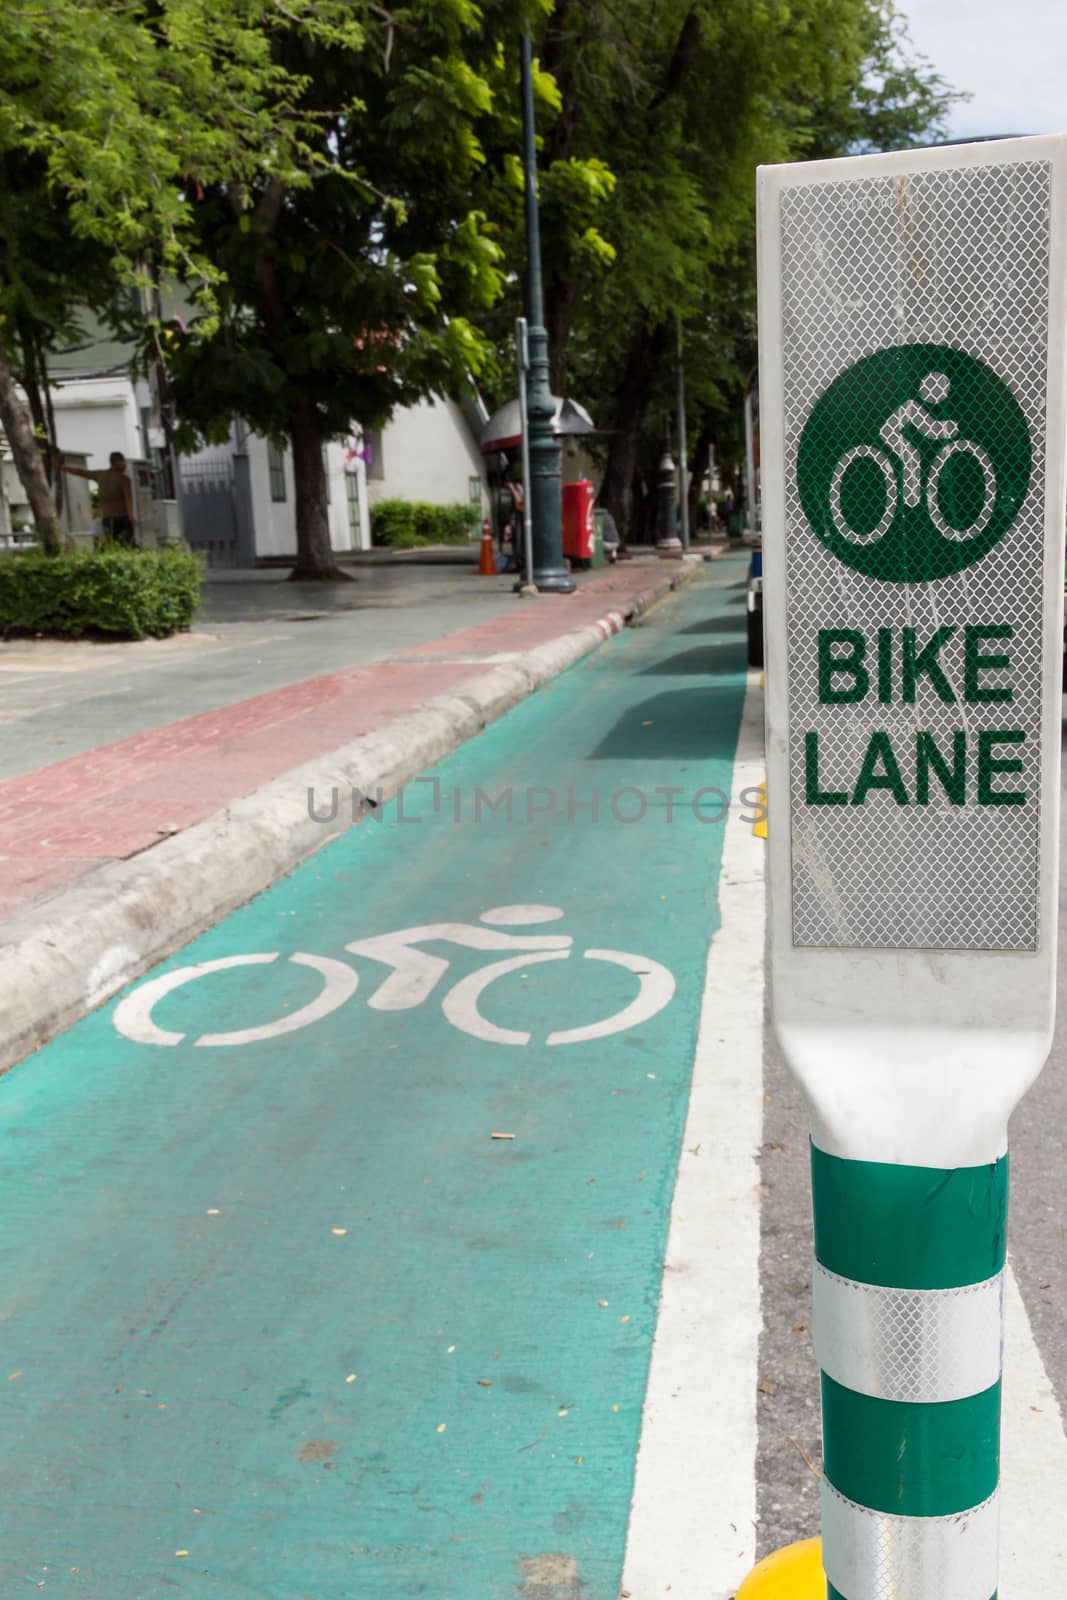 Bike lane by stigmatize